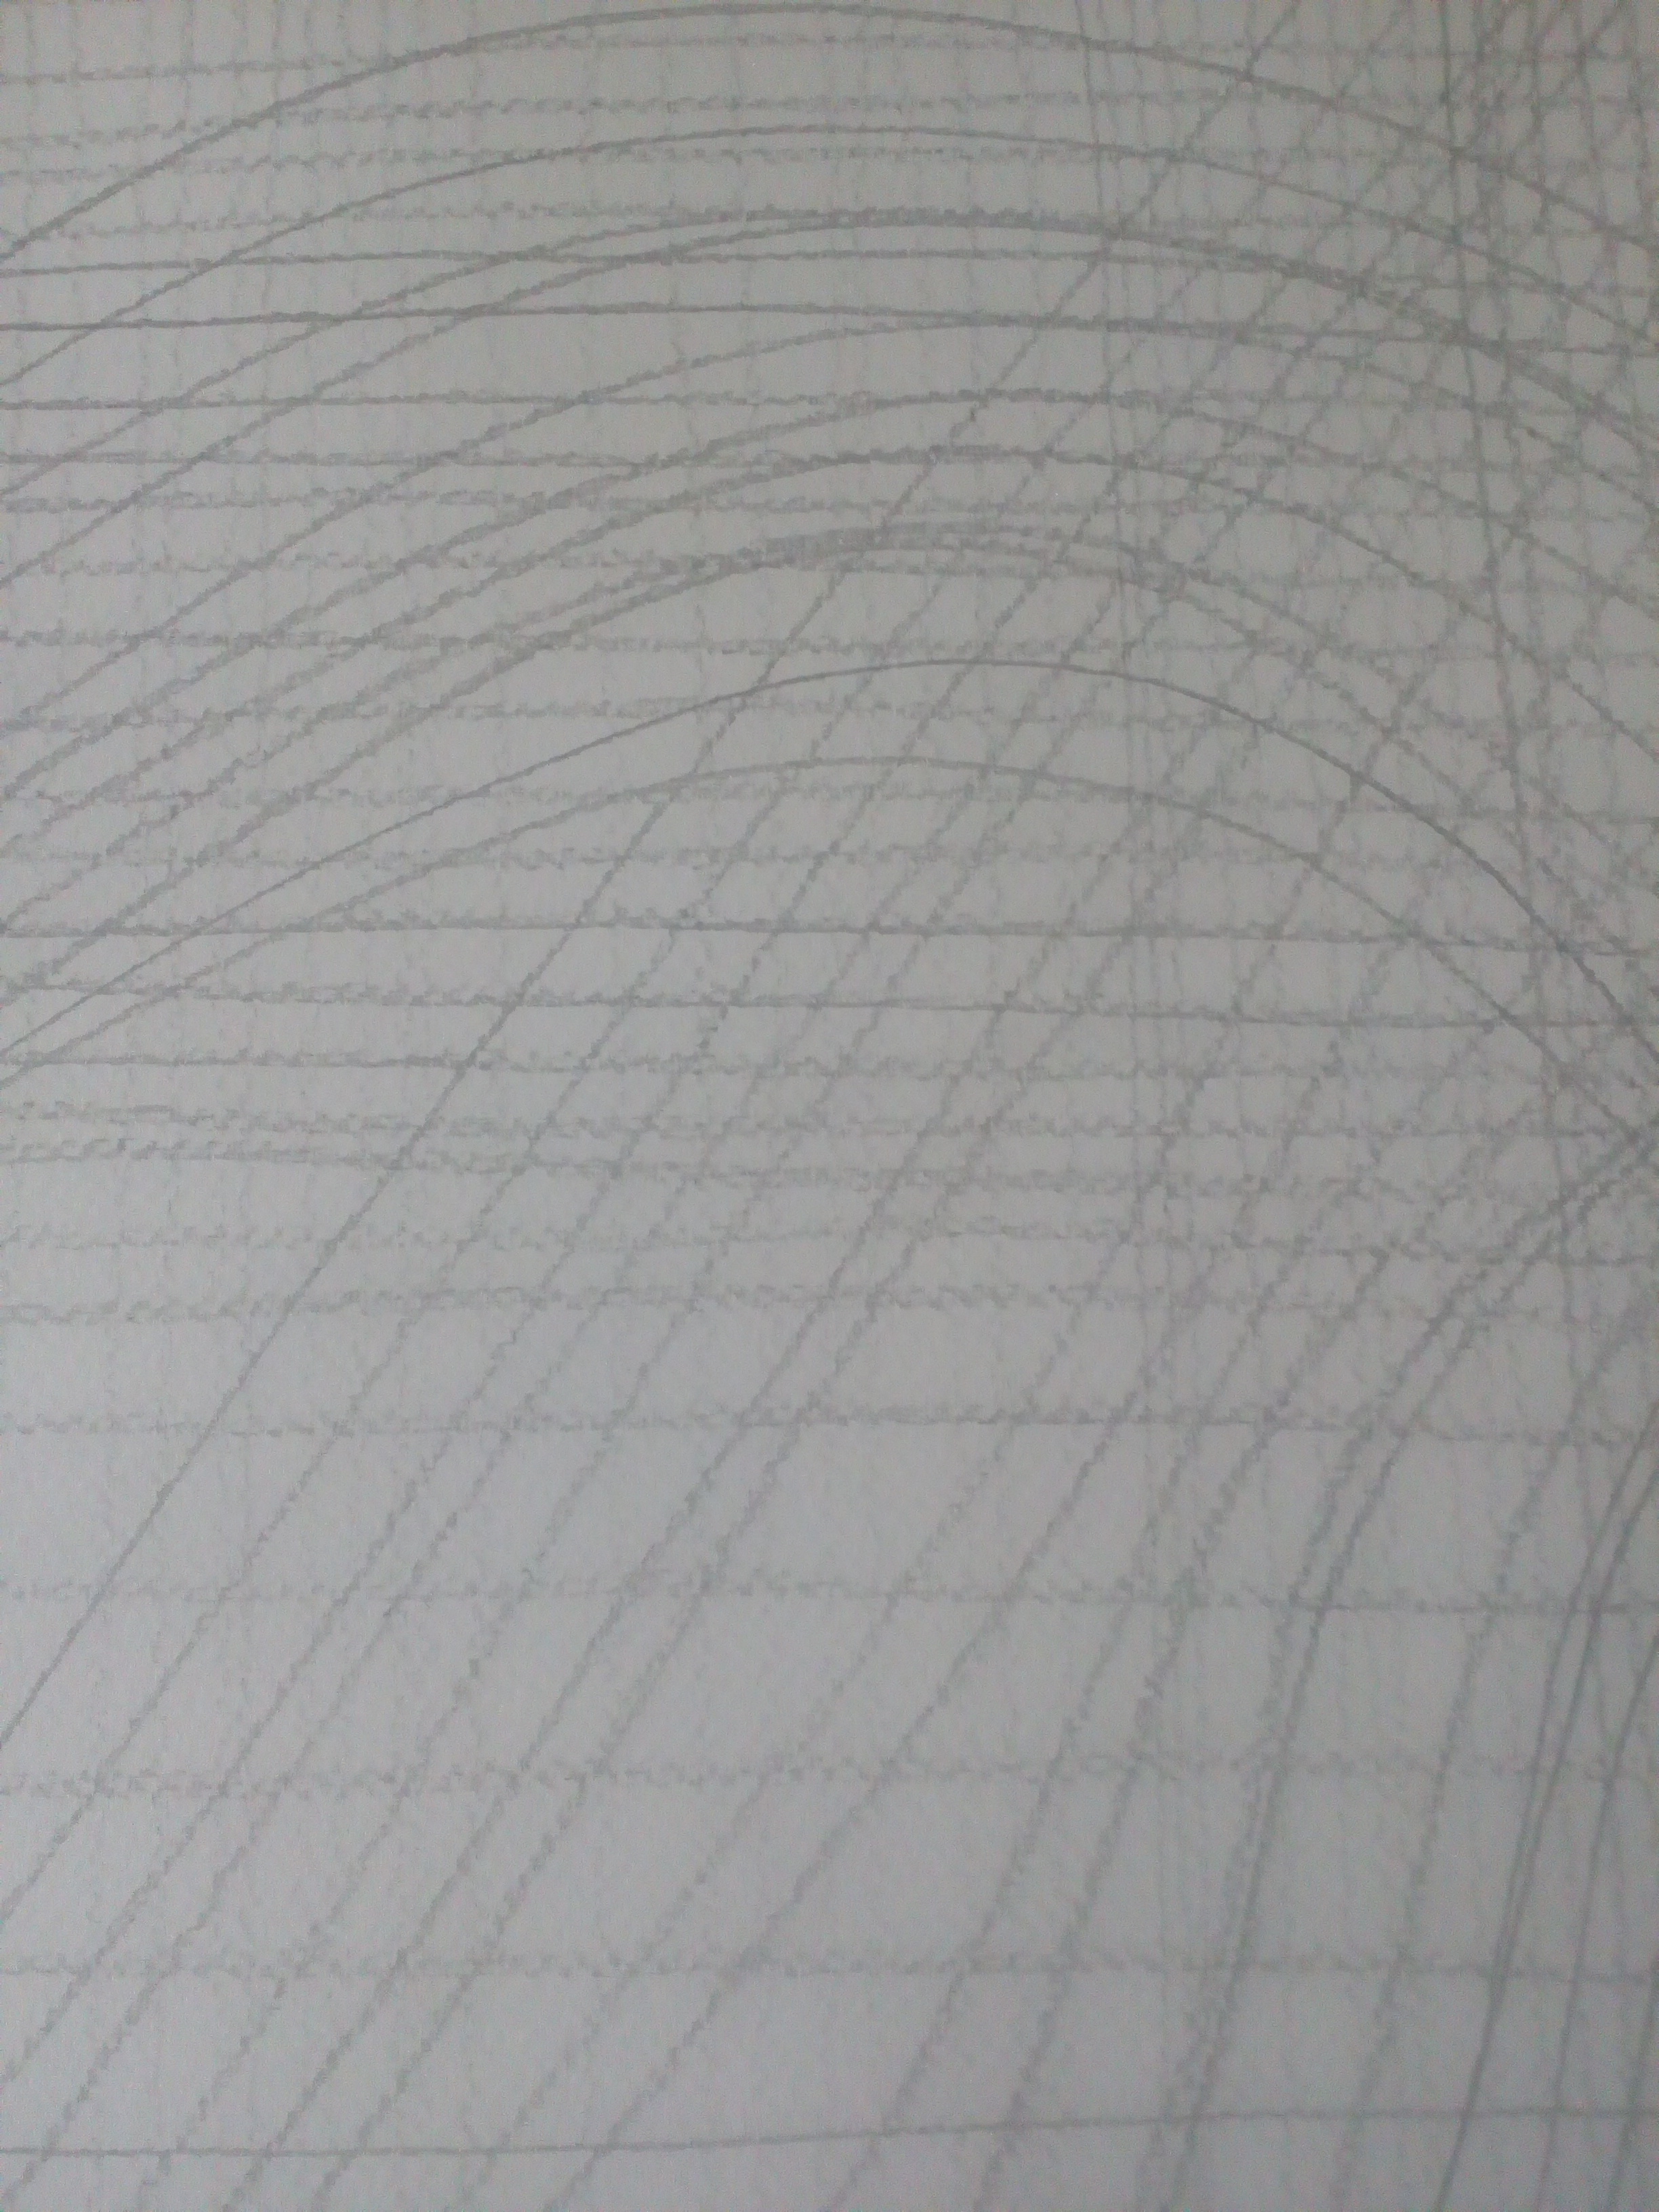 Čiary, kresba ceruzou, formát A3.